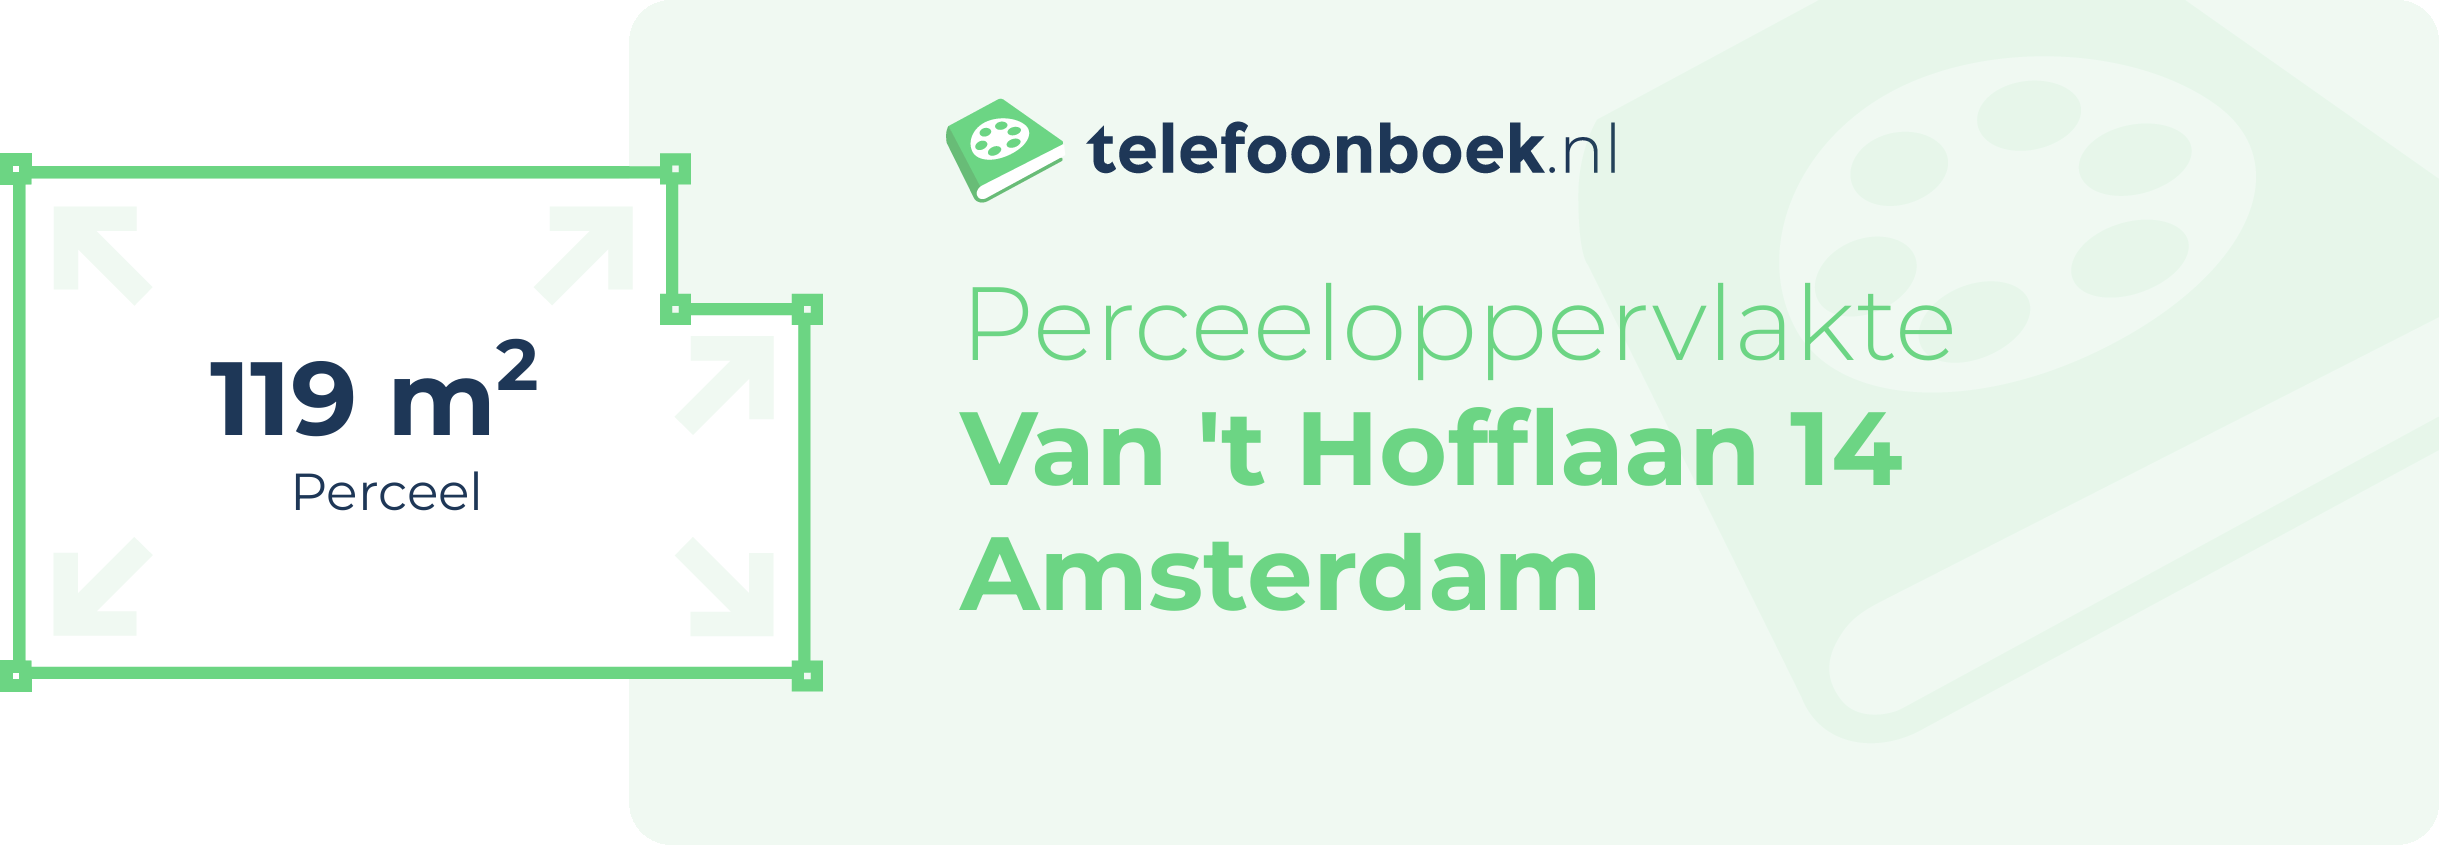 Perceeloppervlakte Van 't Hofflaan 14 Amsterdam